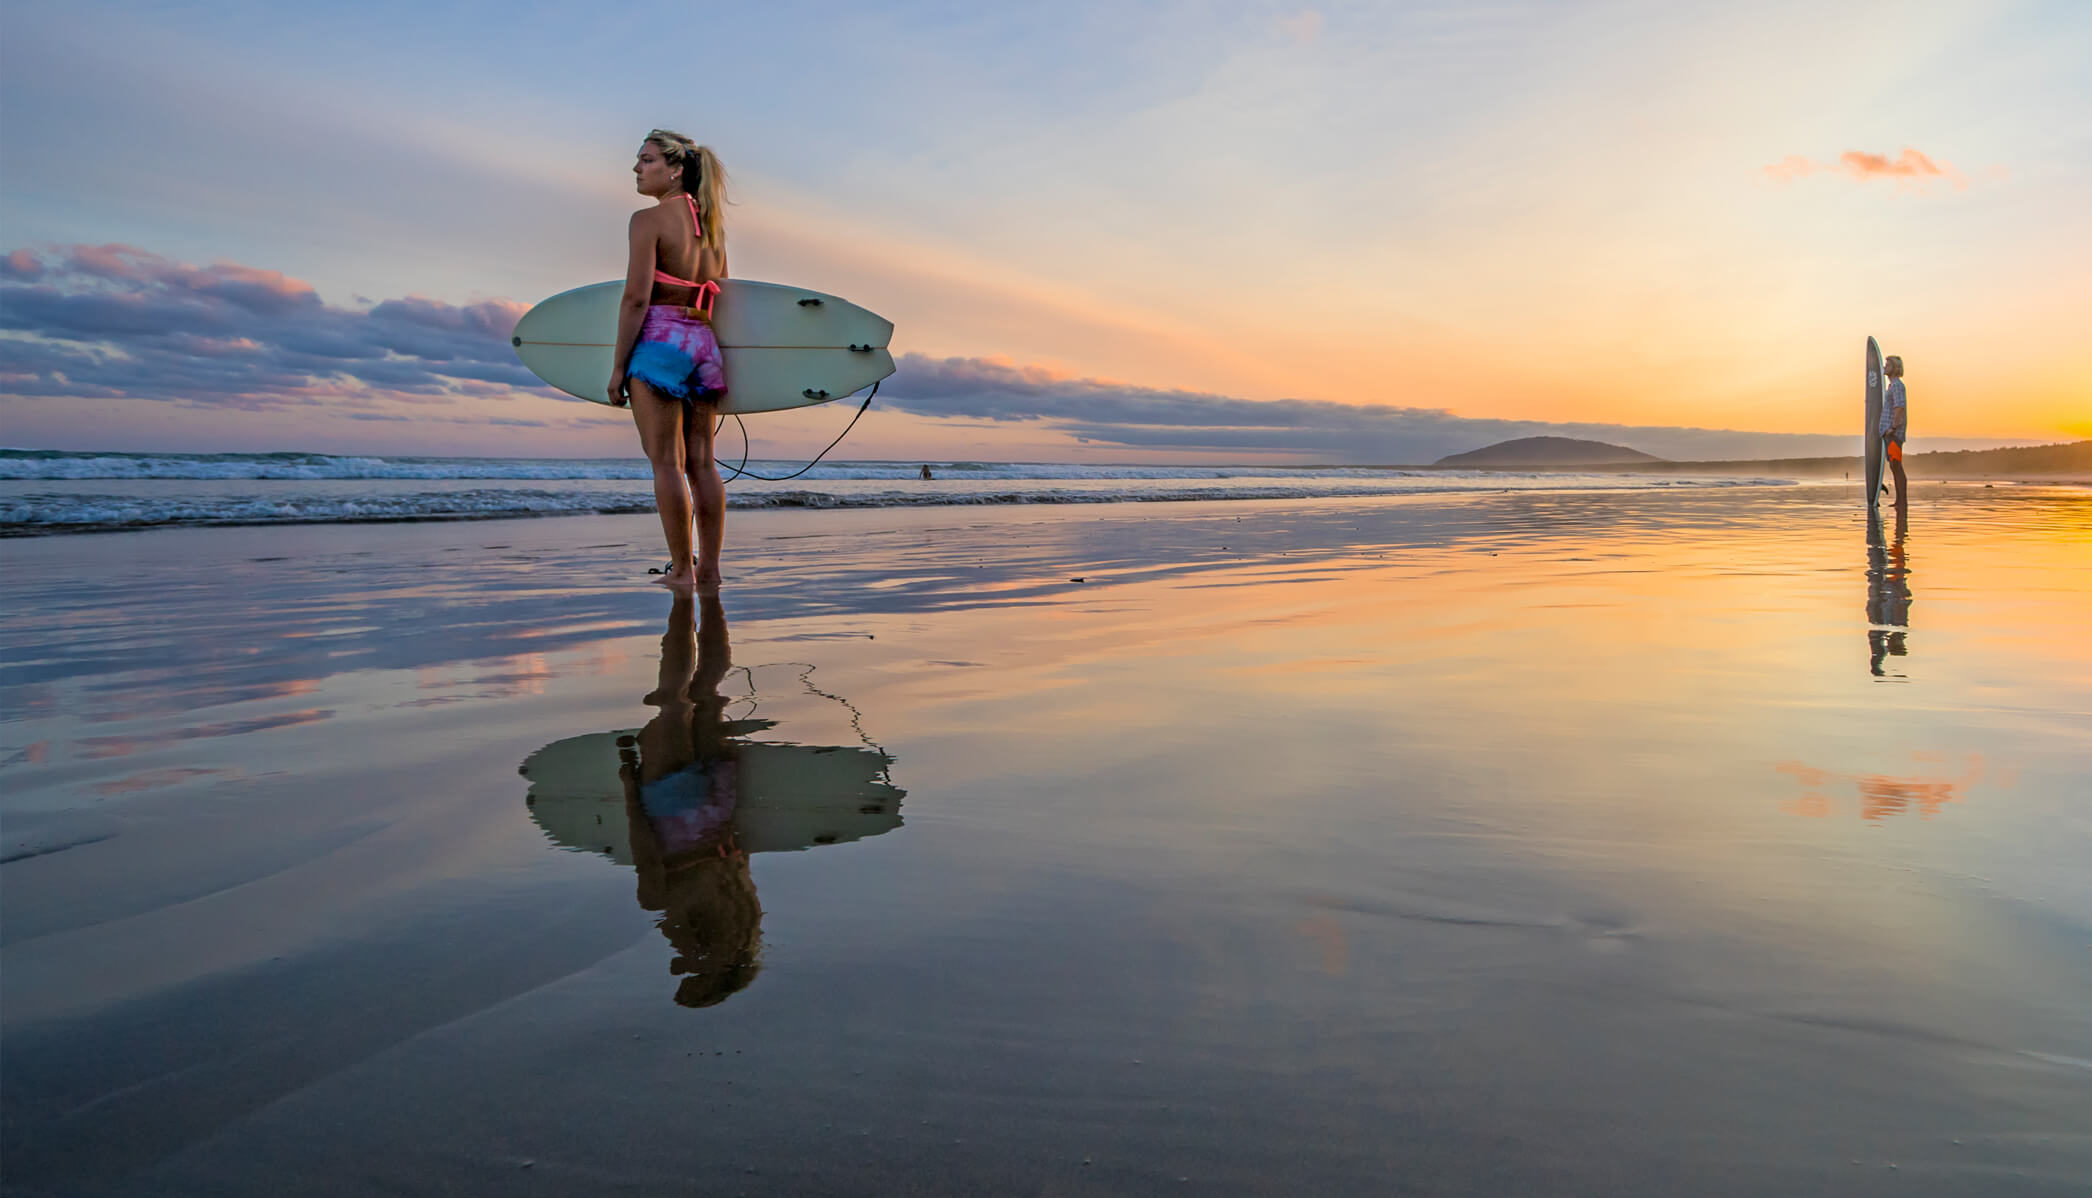 Surfing in Kiama, Photography by Dee Kramer